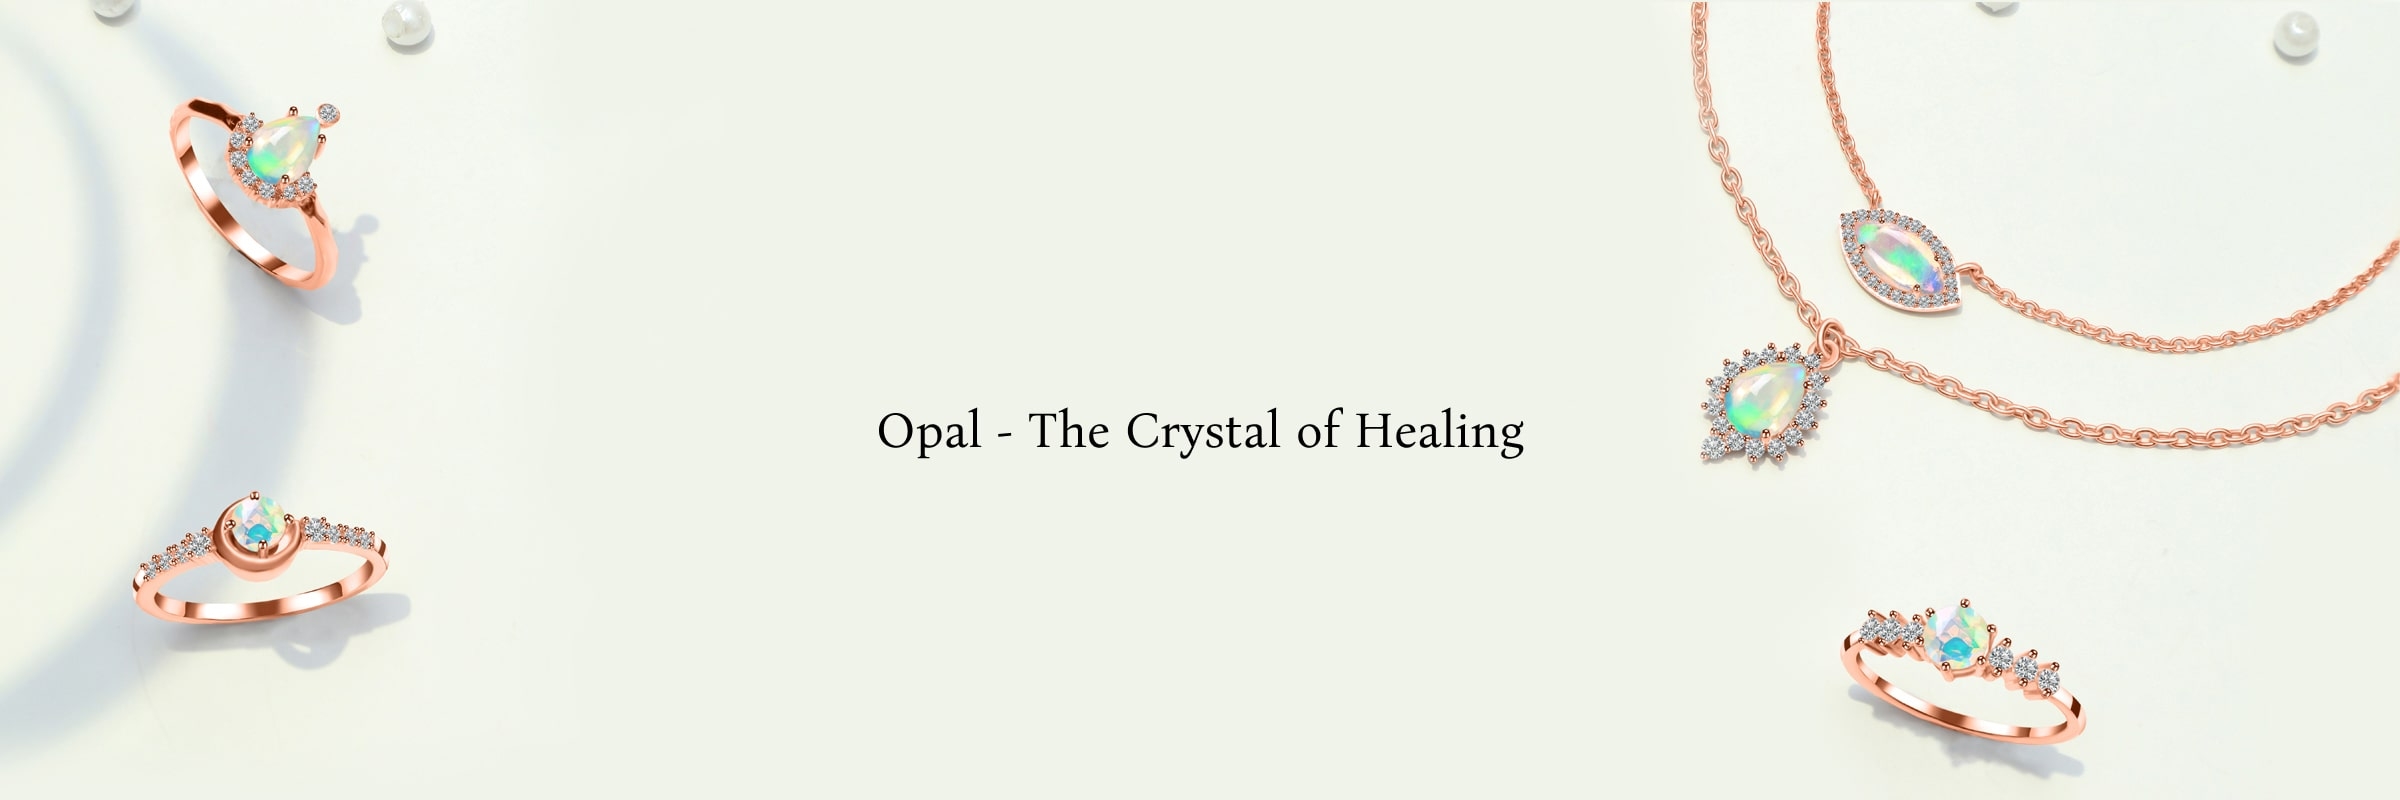 Healing Properties